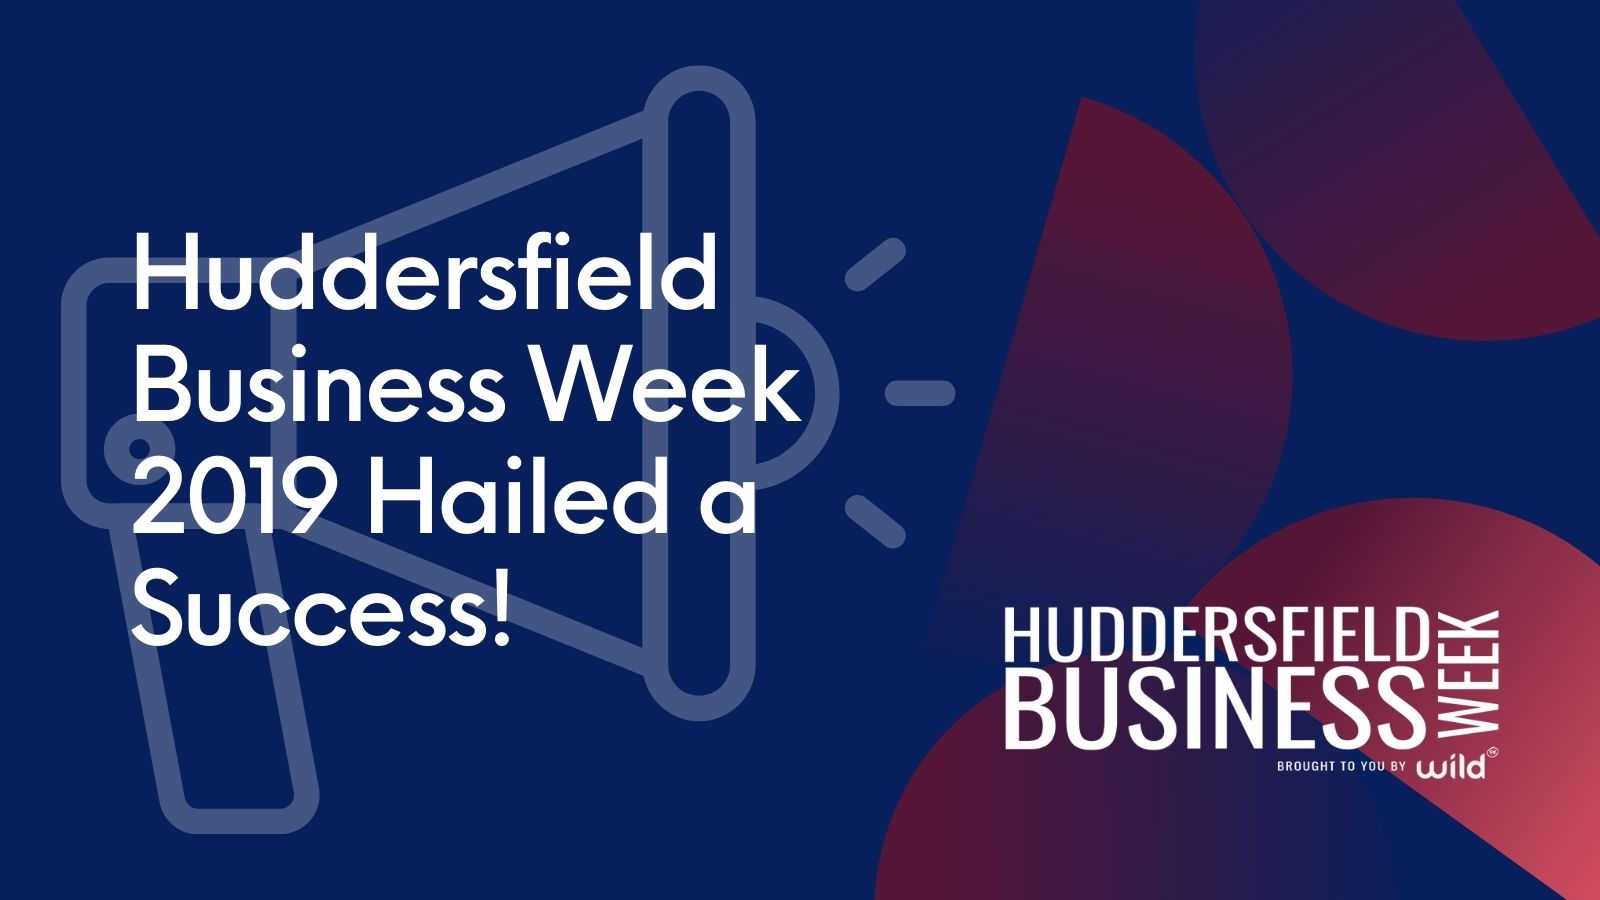 Huddersfield Business Week 2019 Hailed a Success